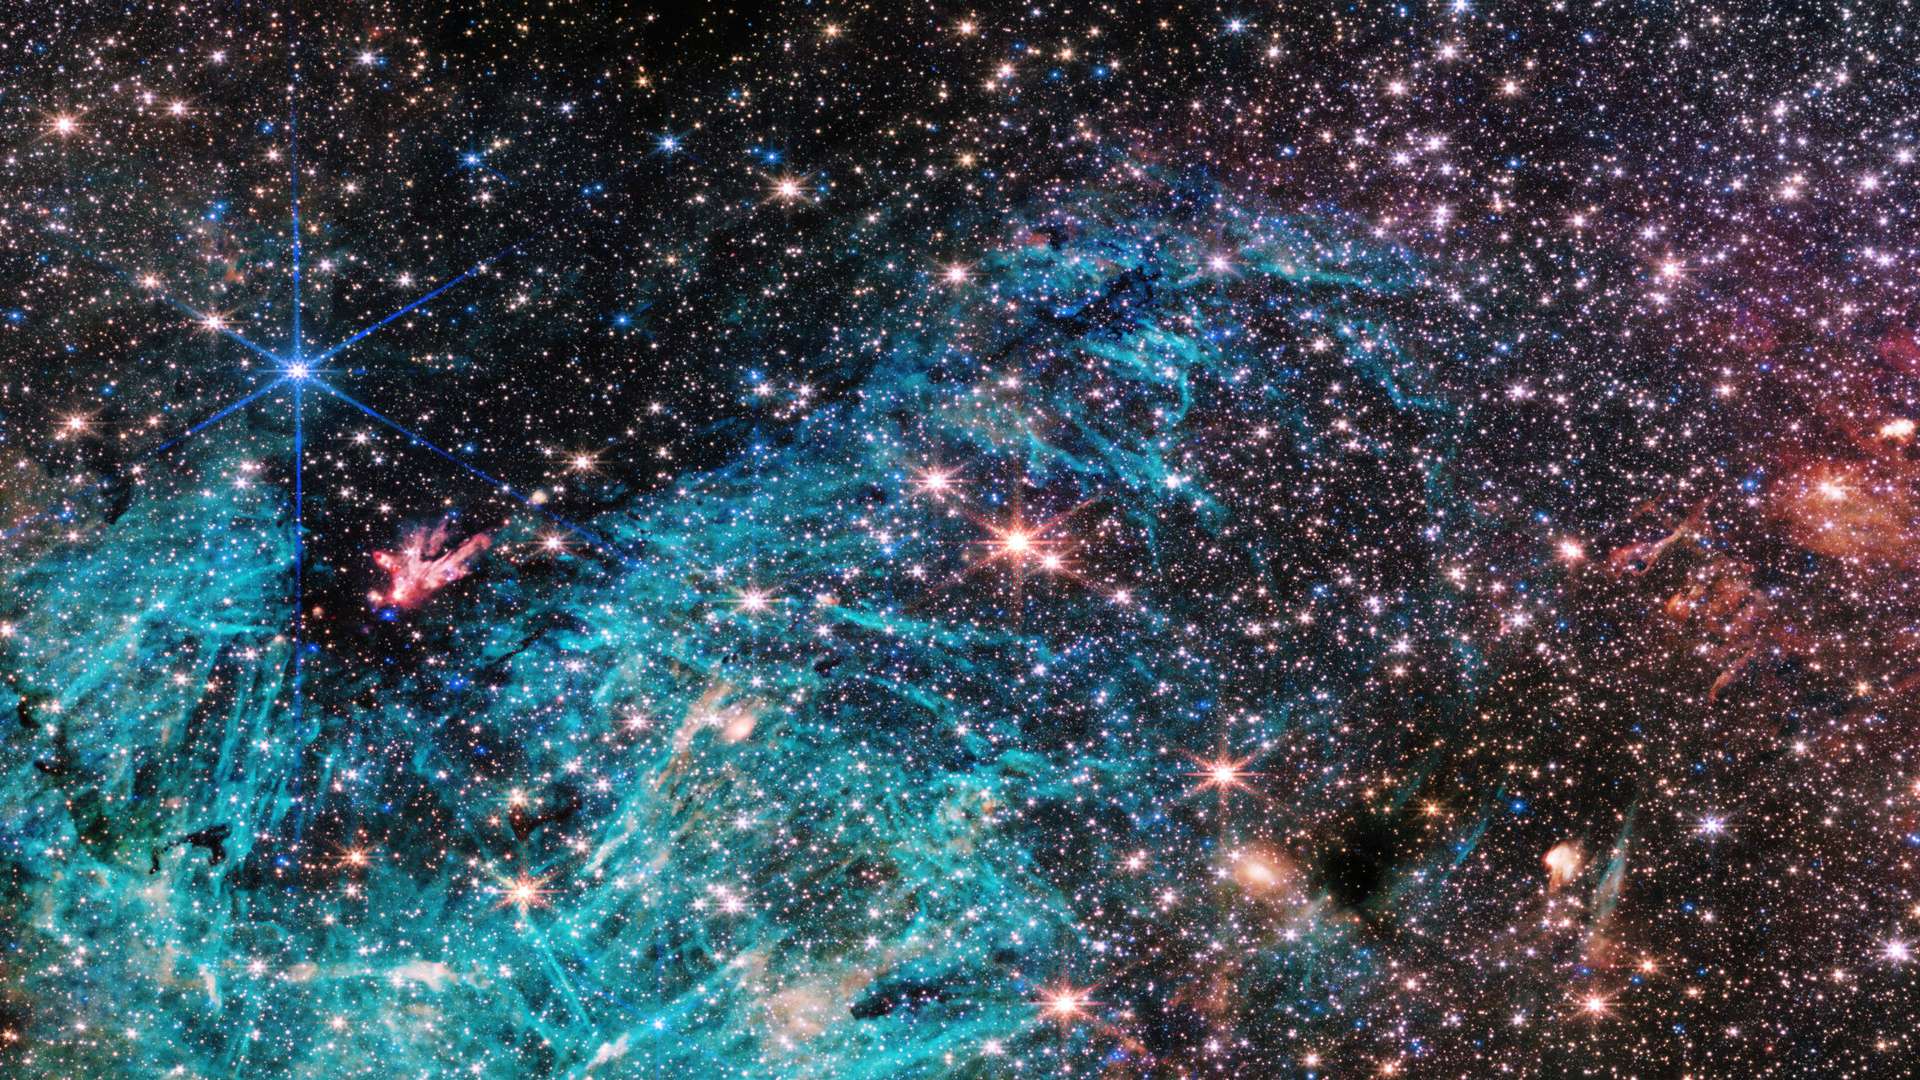 Esta visão do Telescópio Espacial James Webb revela uma porção de 50 anos-luz de largura do centro denso da Via Láctea, a nossa galáxia. Estima-se que 500 mil estrelas brilhem nesta imagem da região de Sagittarius C (Sgr C), a cerca de 300 anos-luz de distância do buraco negro supermassivo Sagittarius A*, que fica a aproximadamente 26 mil anos-luz de distância da Terra, na direção da Constelação de Sagitário. Uma vasta região de hidrogênio ionizado aparece em ciano, envolvendo uma nuvem infravermelha escura, que é tão densa a ponto de bloquear a luz de estrelas atrás dela